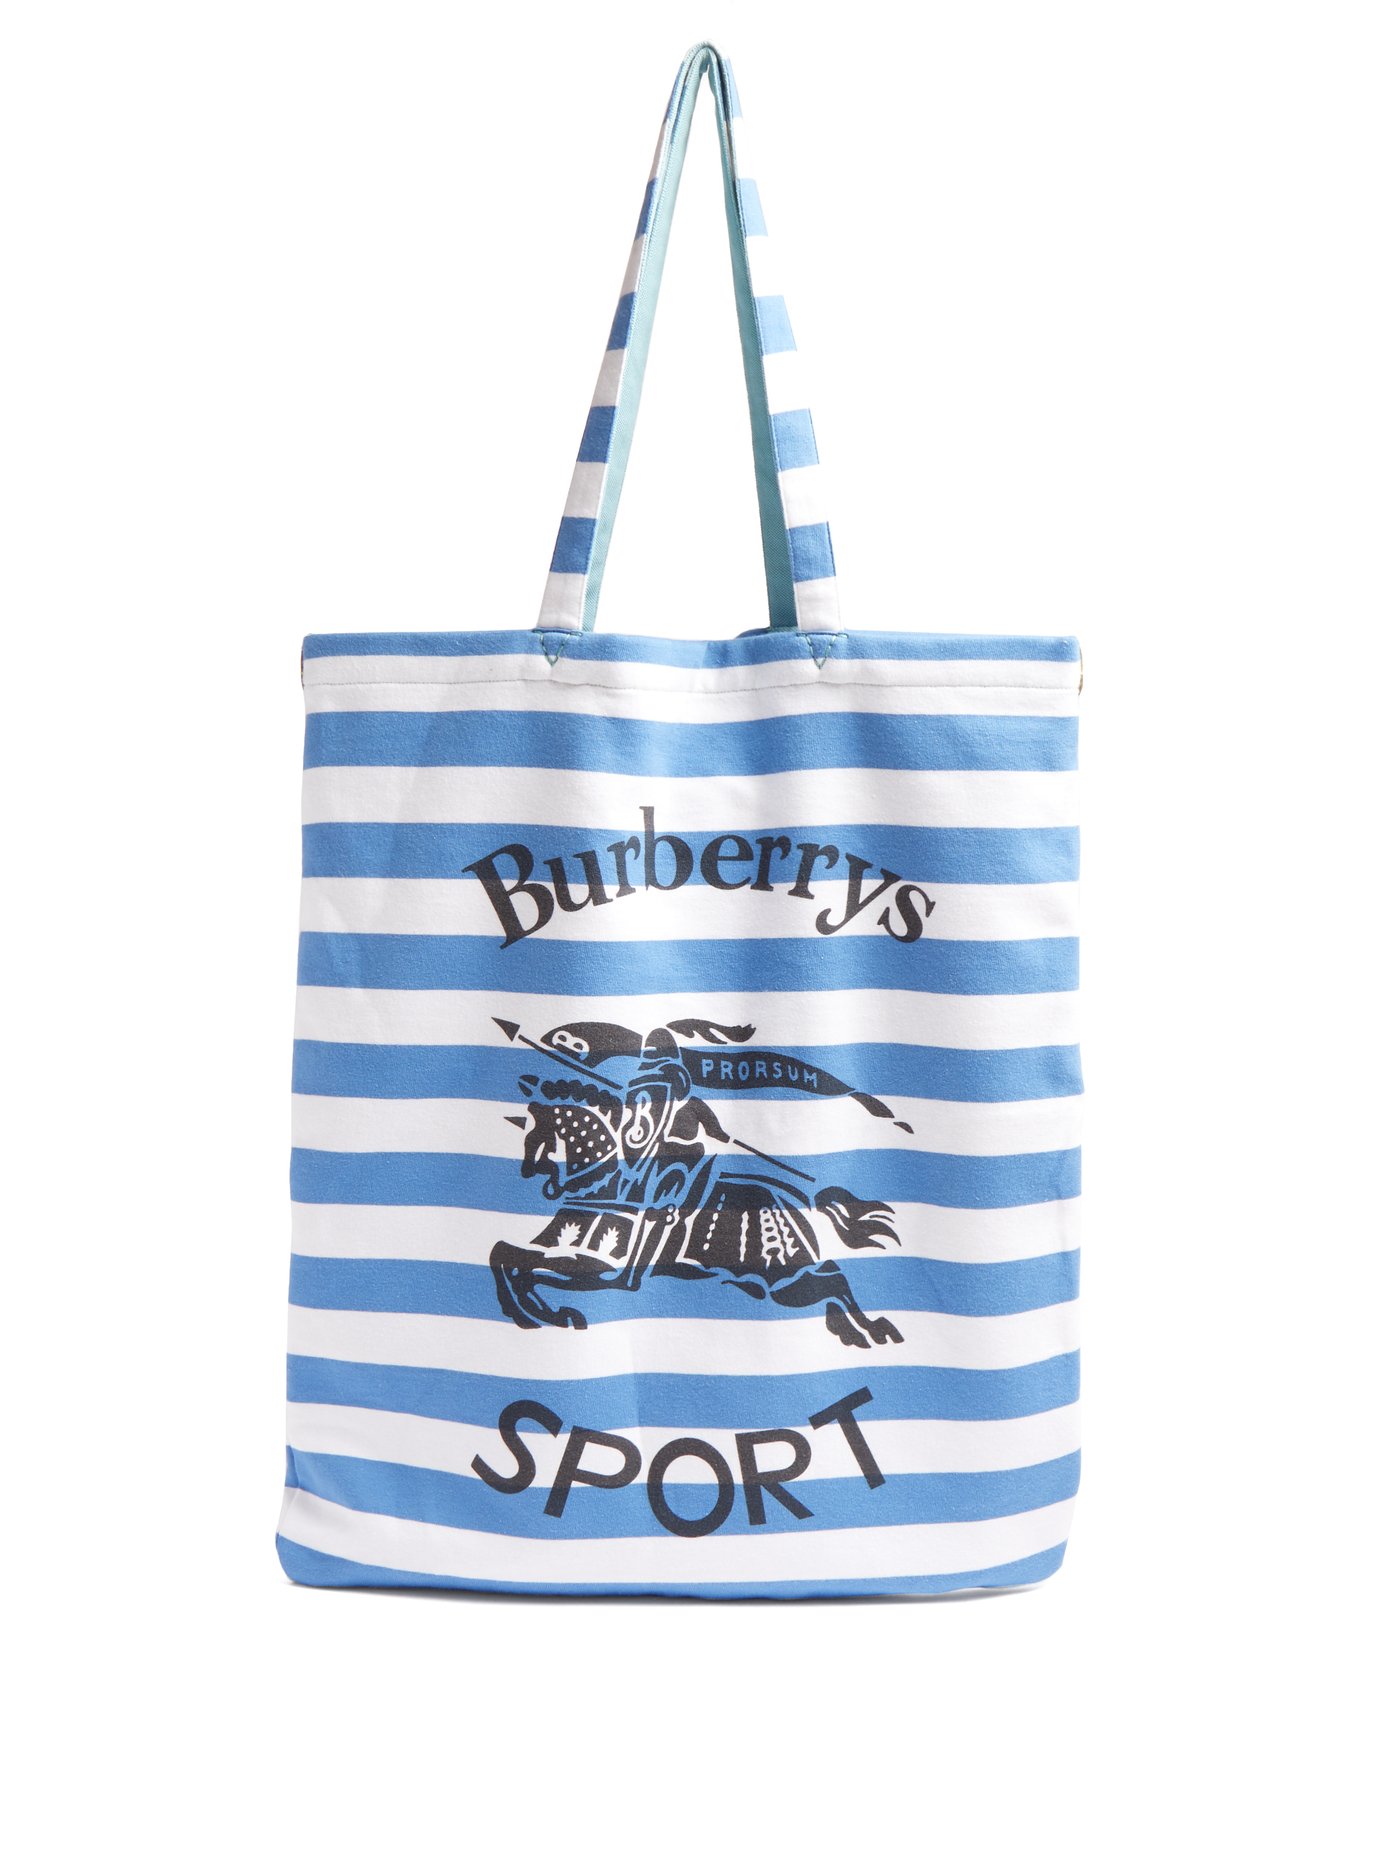 burberry sport bag